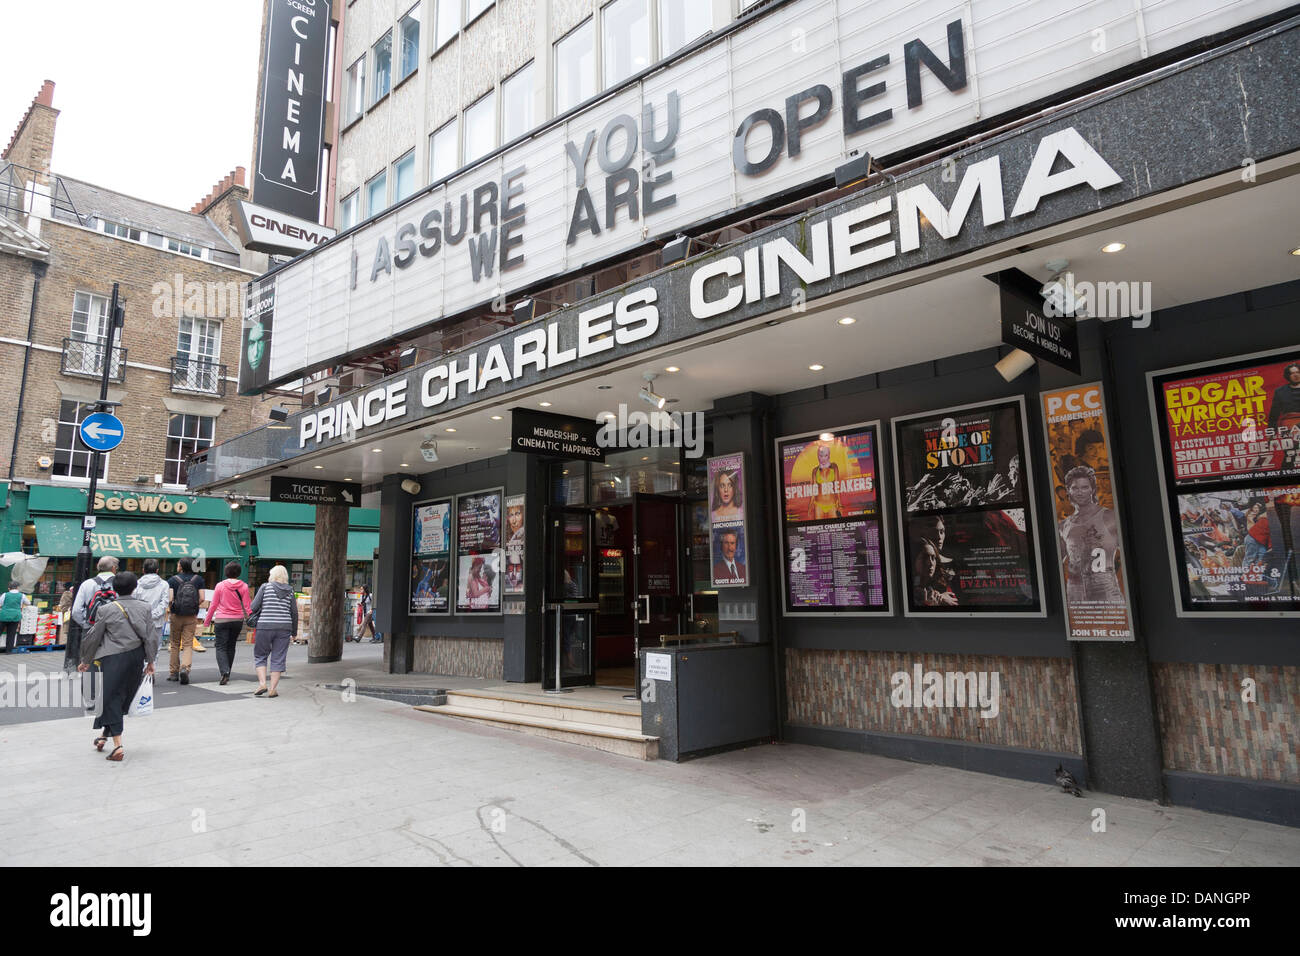 El cine Prince Charles, Londres, Reino Unido. Foto de stock